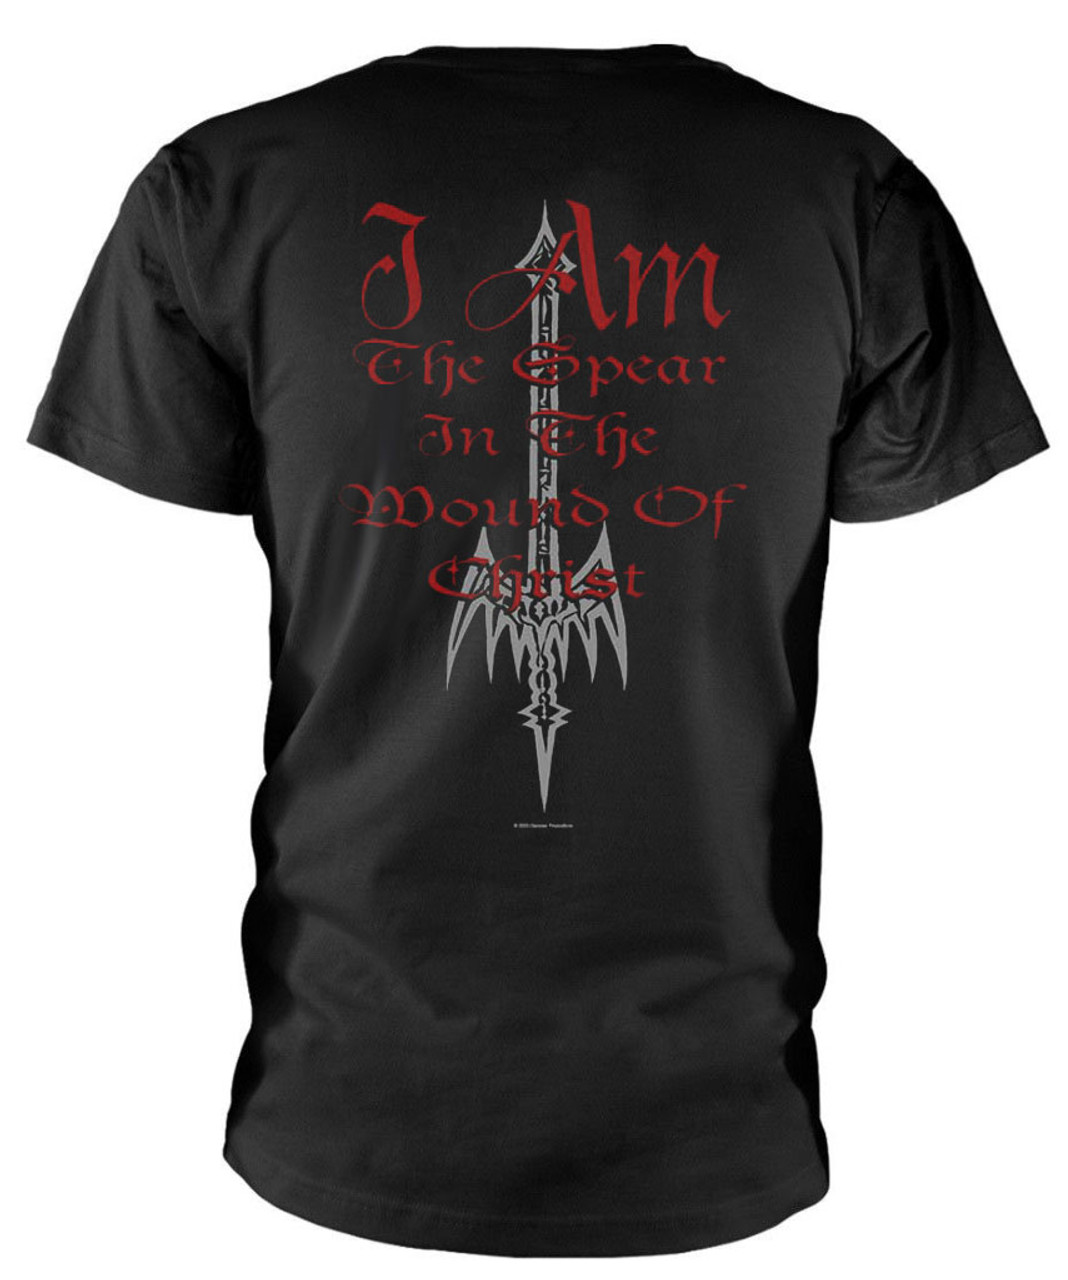 Angelcorpse 'Christhammer' (Black) T-Shirt